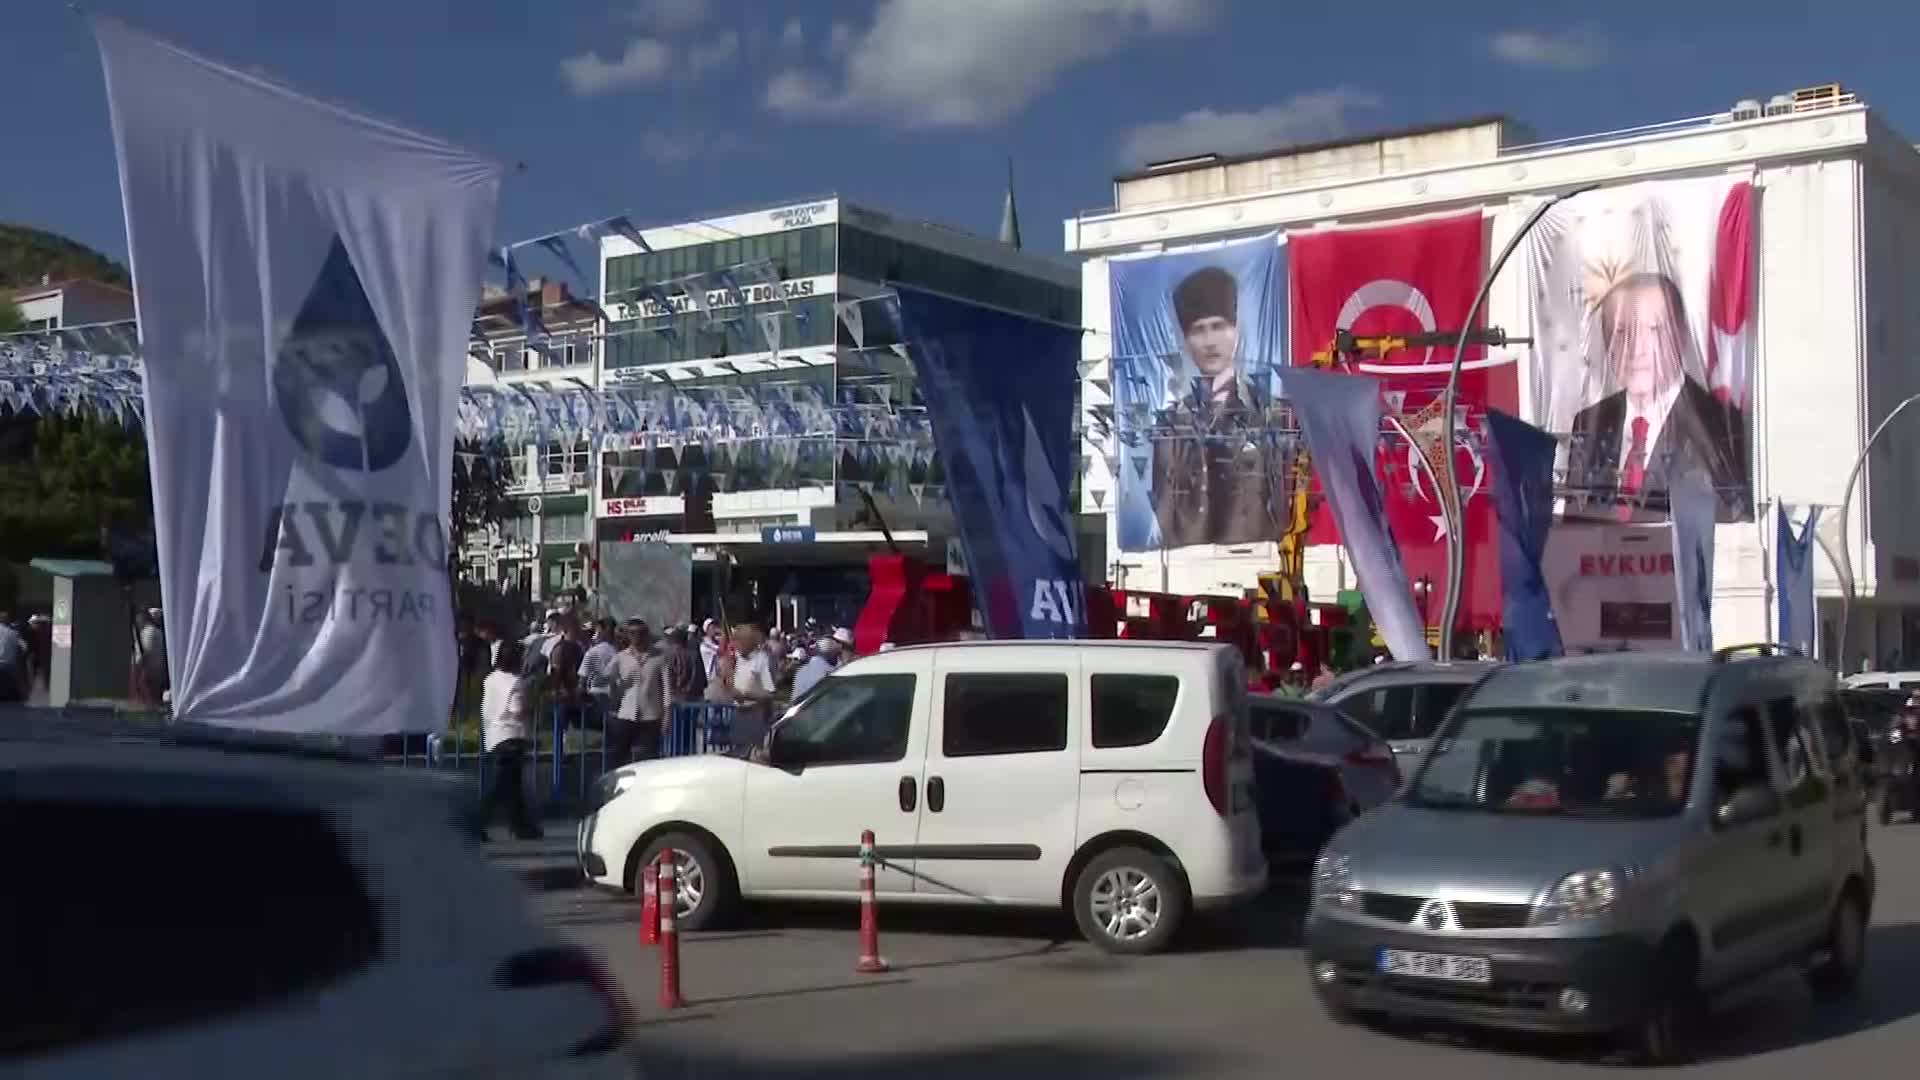 Babacan'ın Yozgat mitingi öncesi alana Erdoğan’ın fotoğrafı asıldı